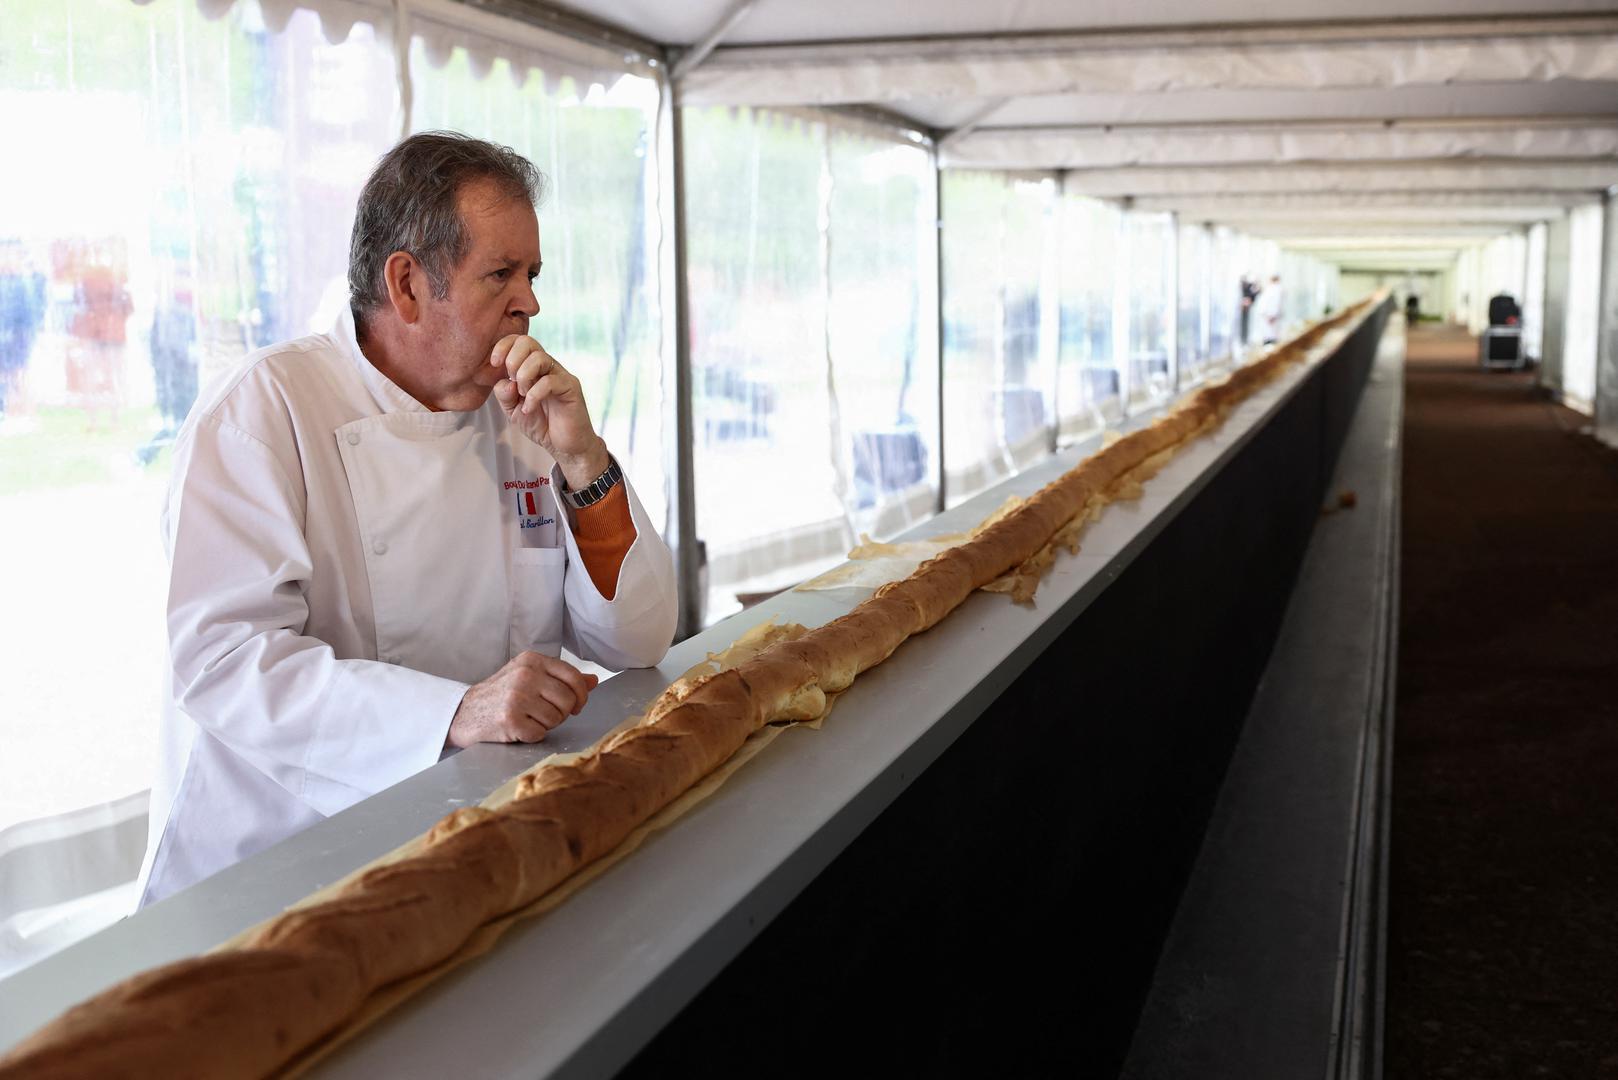 "Sve je potvrđeno, svi smo vrlo sretni da smo postigli rekord i da je to učinjeno u Francuskoj", rekao je  Anthony Arrigault, jedan od pekara, nakon što je rekord potvrdio sudac Guinnessove knjige rekorda.